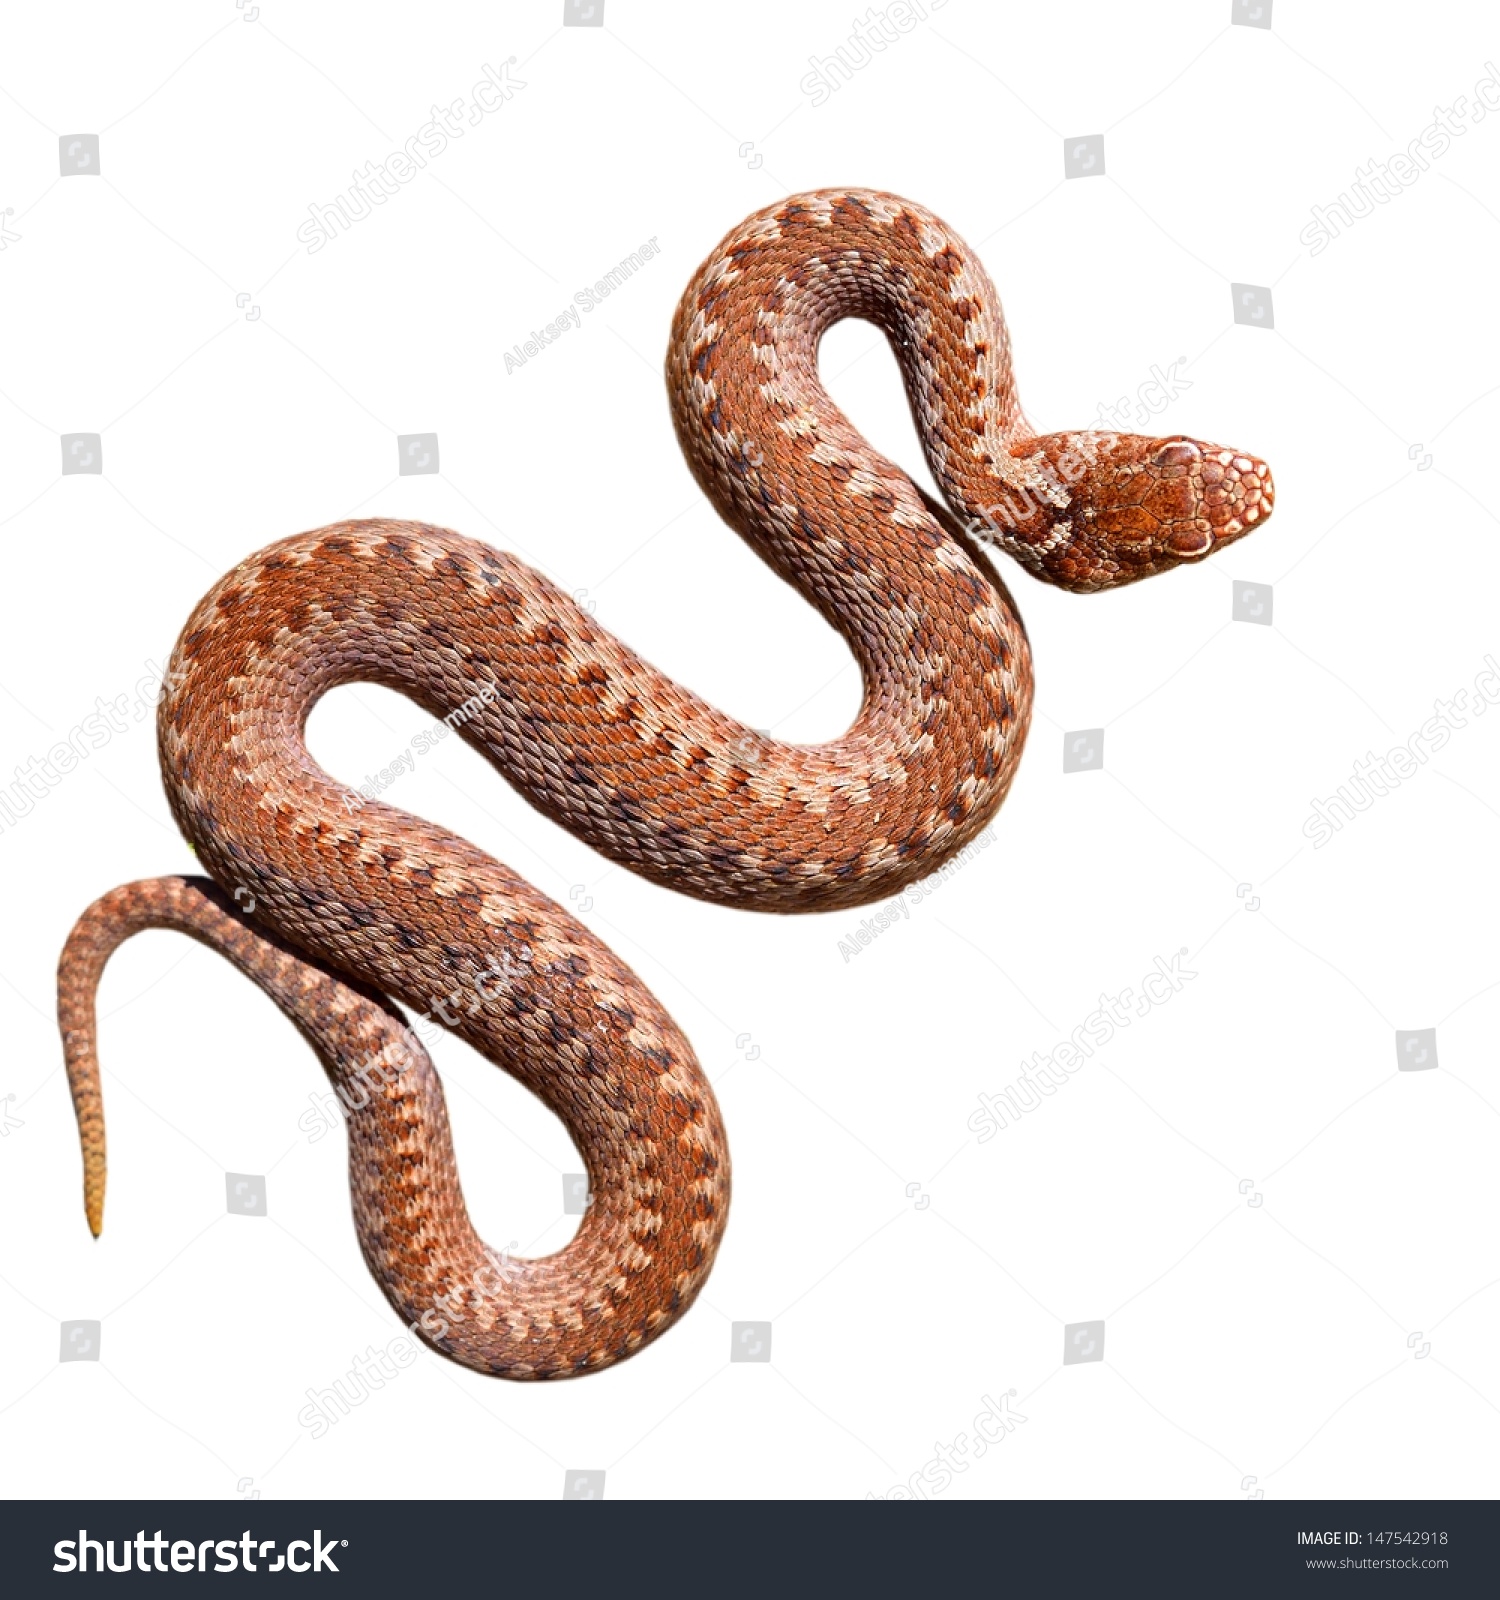 stock-photo-common-viper-snake-isolated-on-white-147542918.jpg